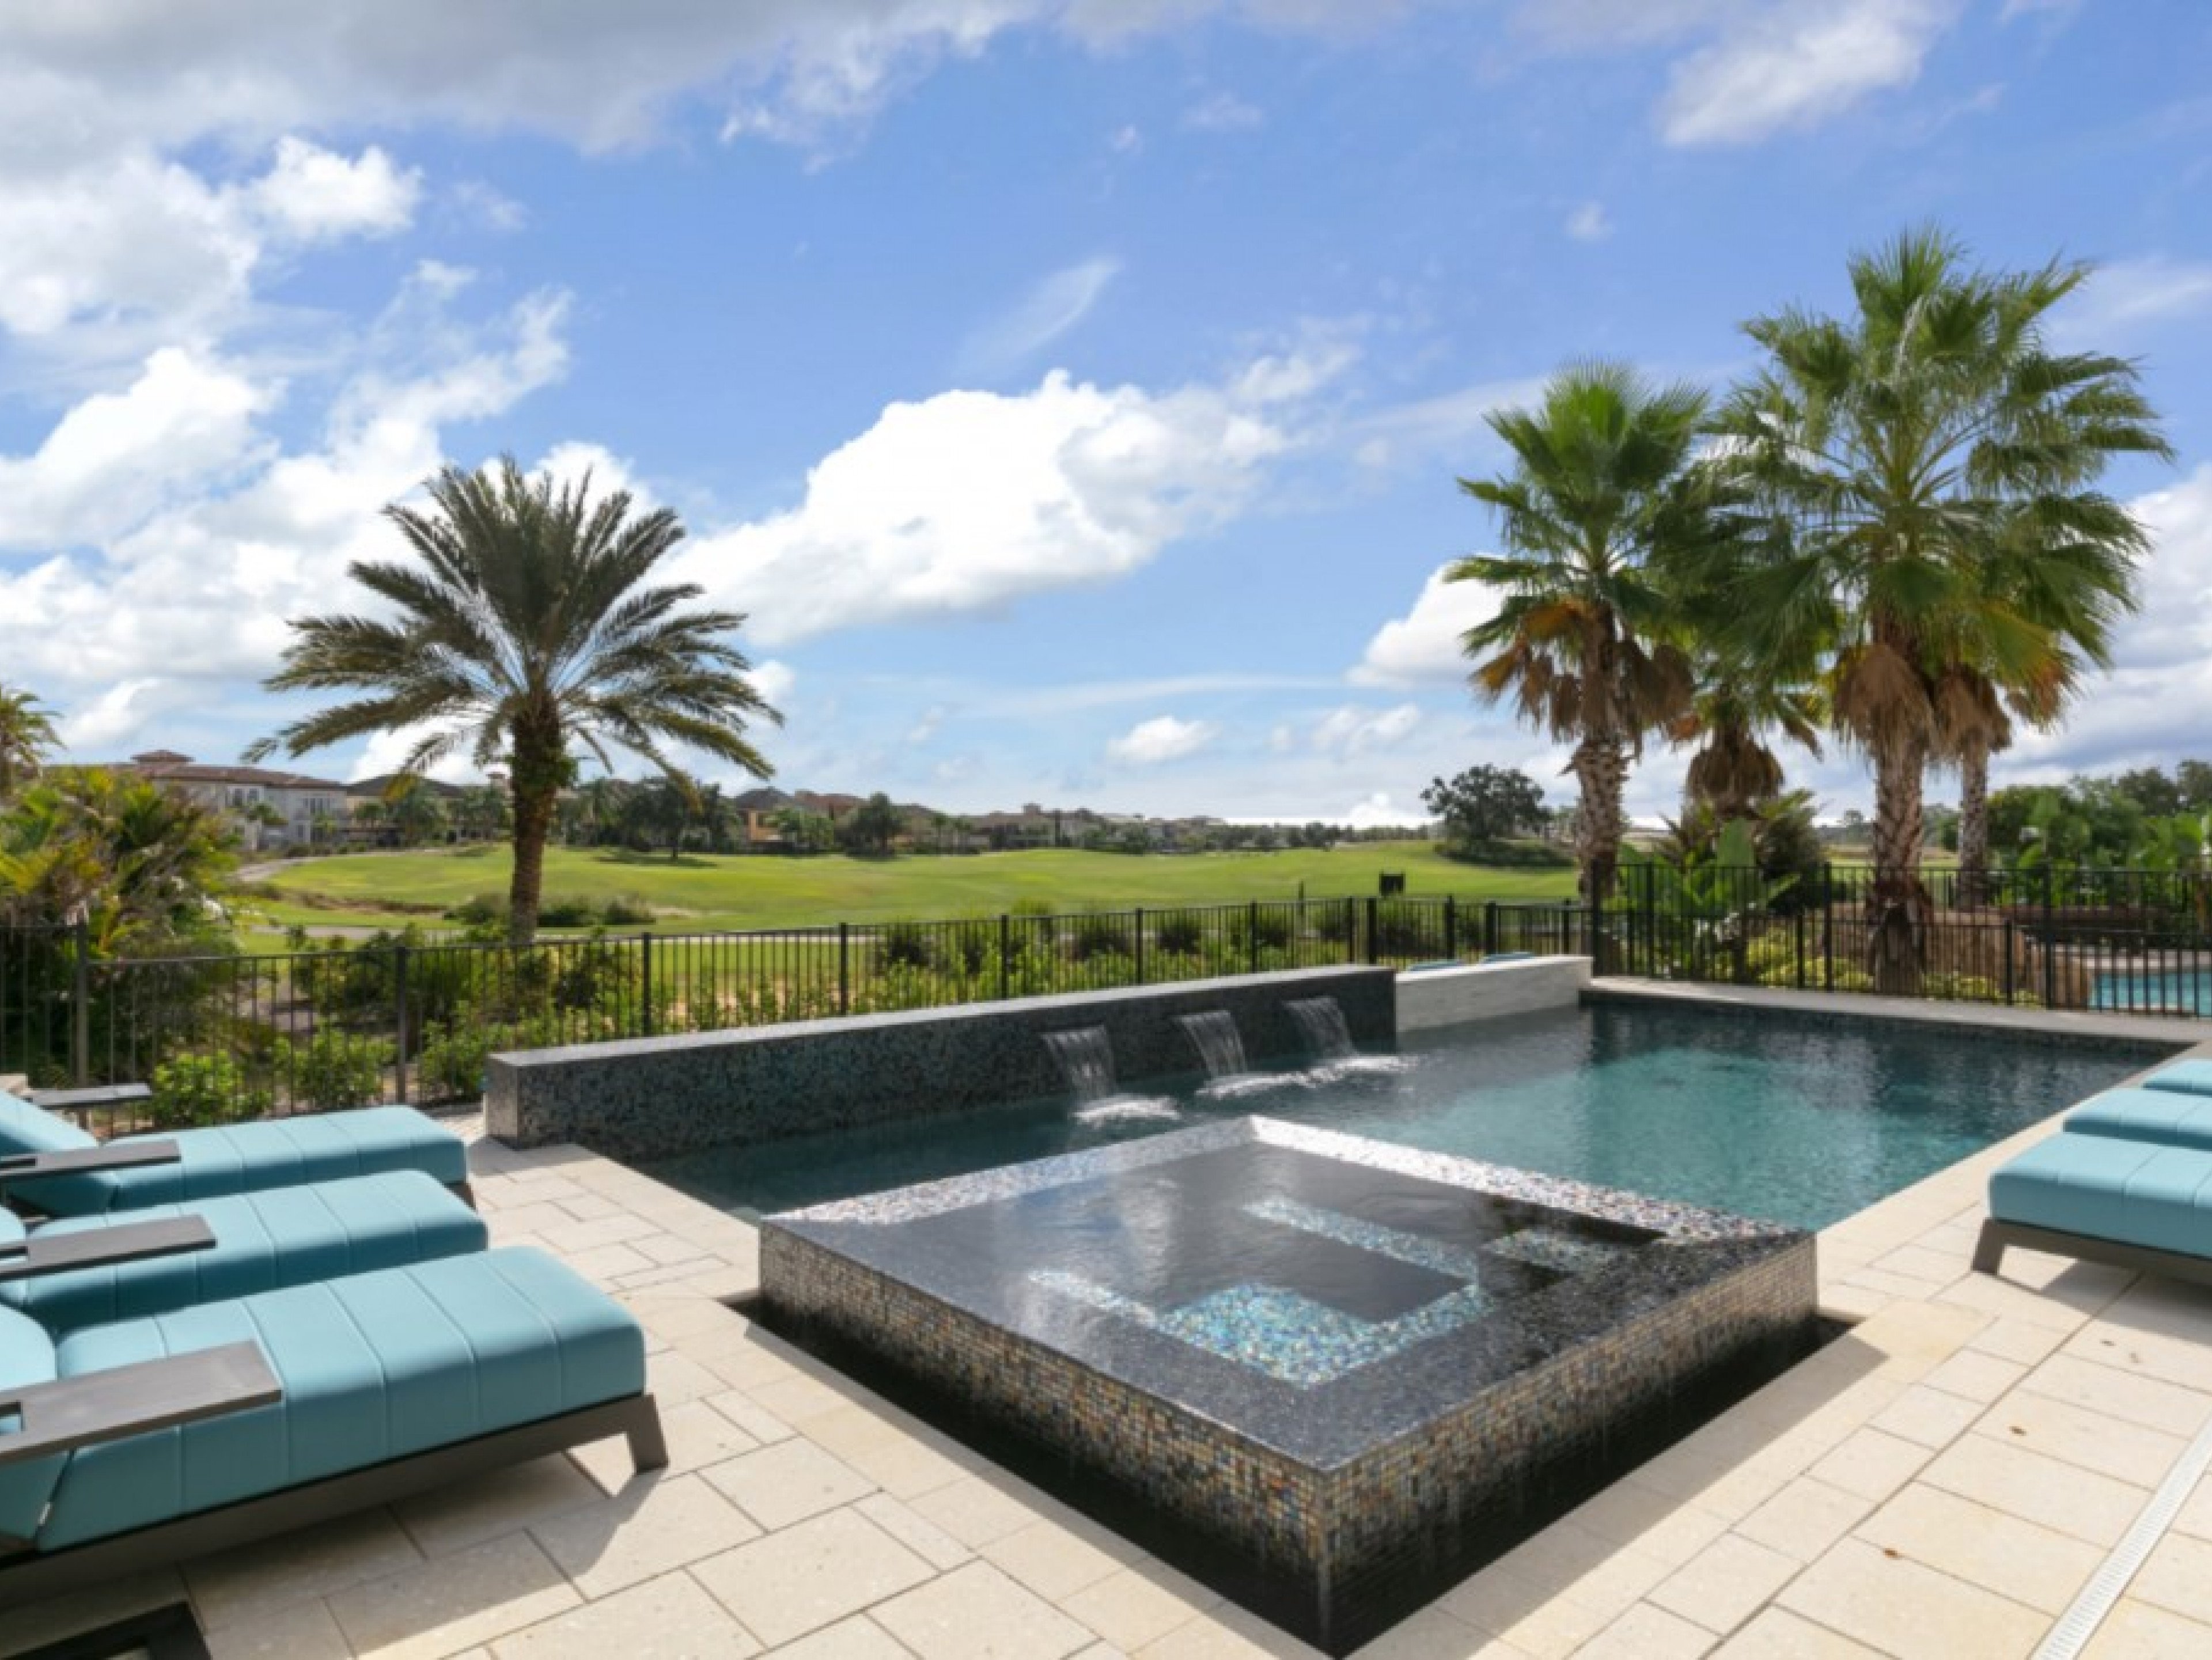 8 bedroom vacation rentals in Orlando Florida Reunion Resort 1200